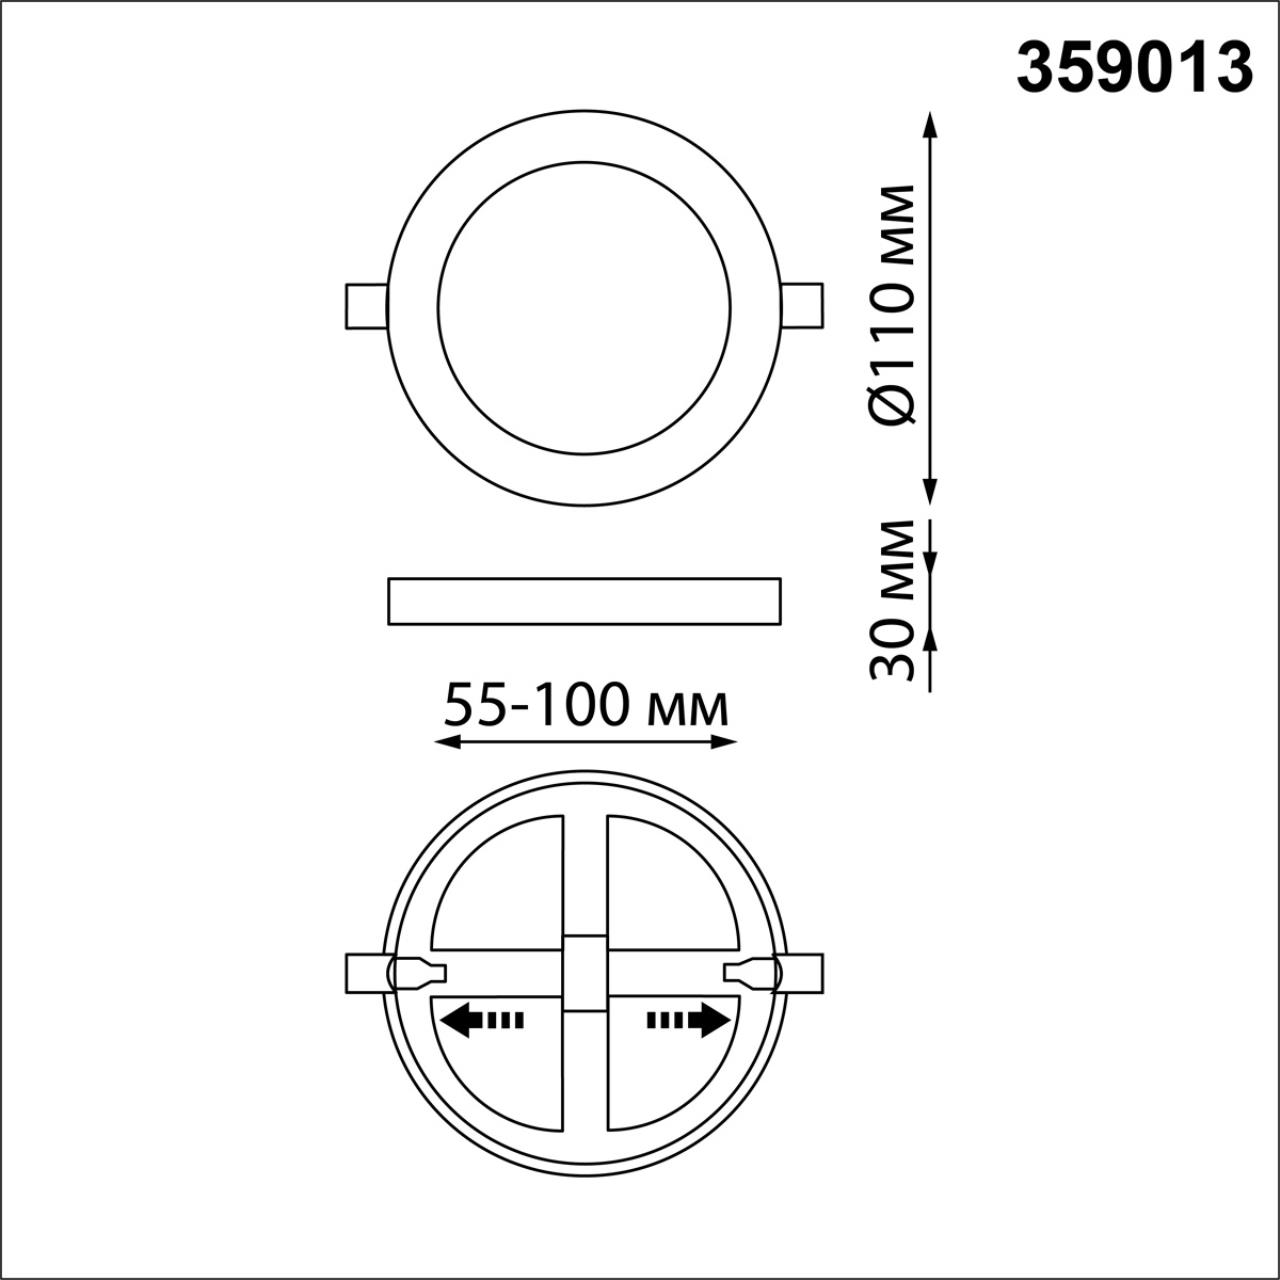 Трёхрежимный встраиваемый светодиодный светильник Novotech SPAN 359013